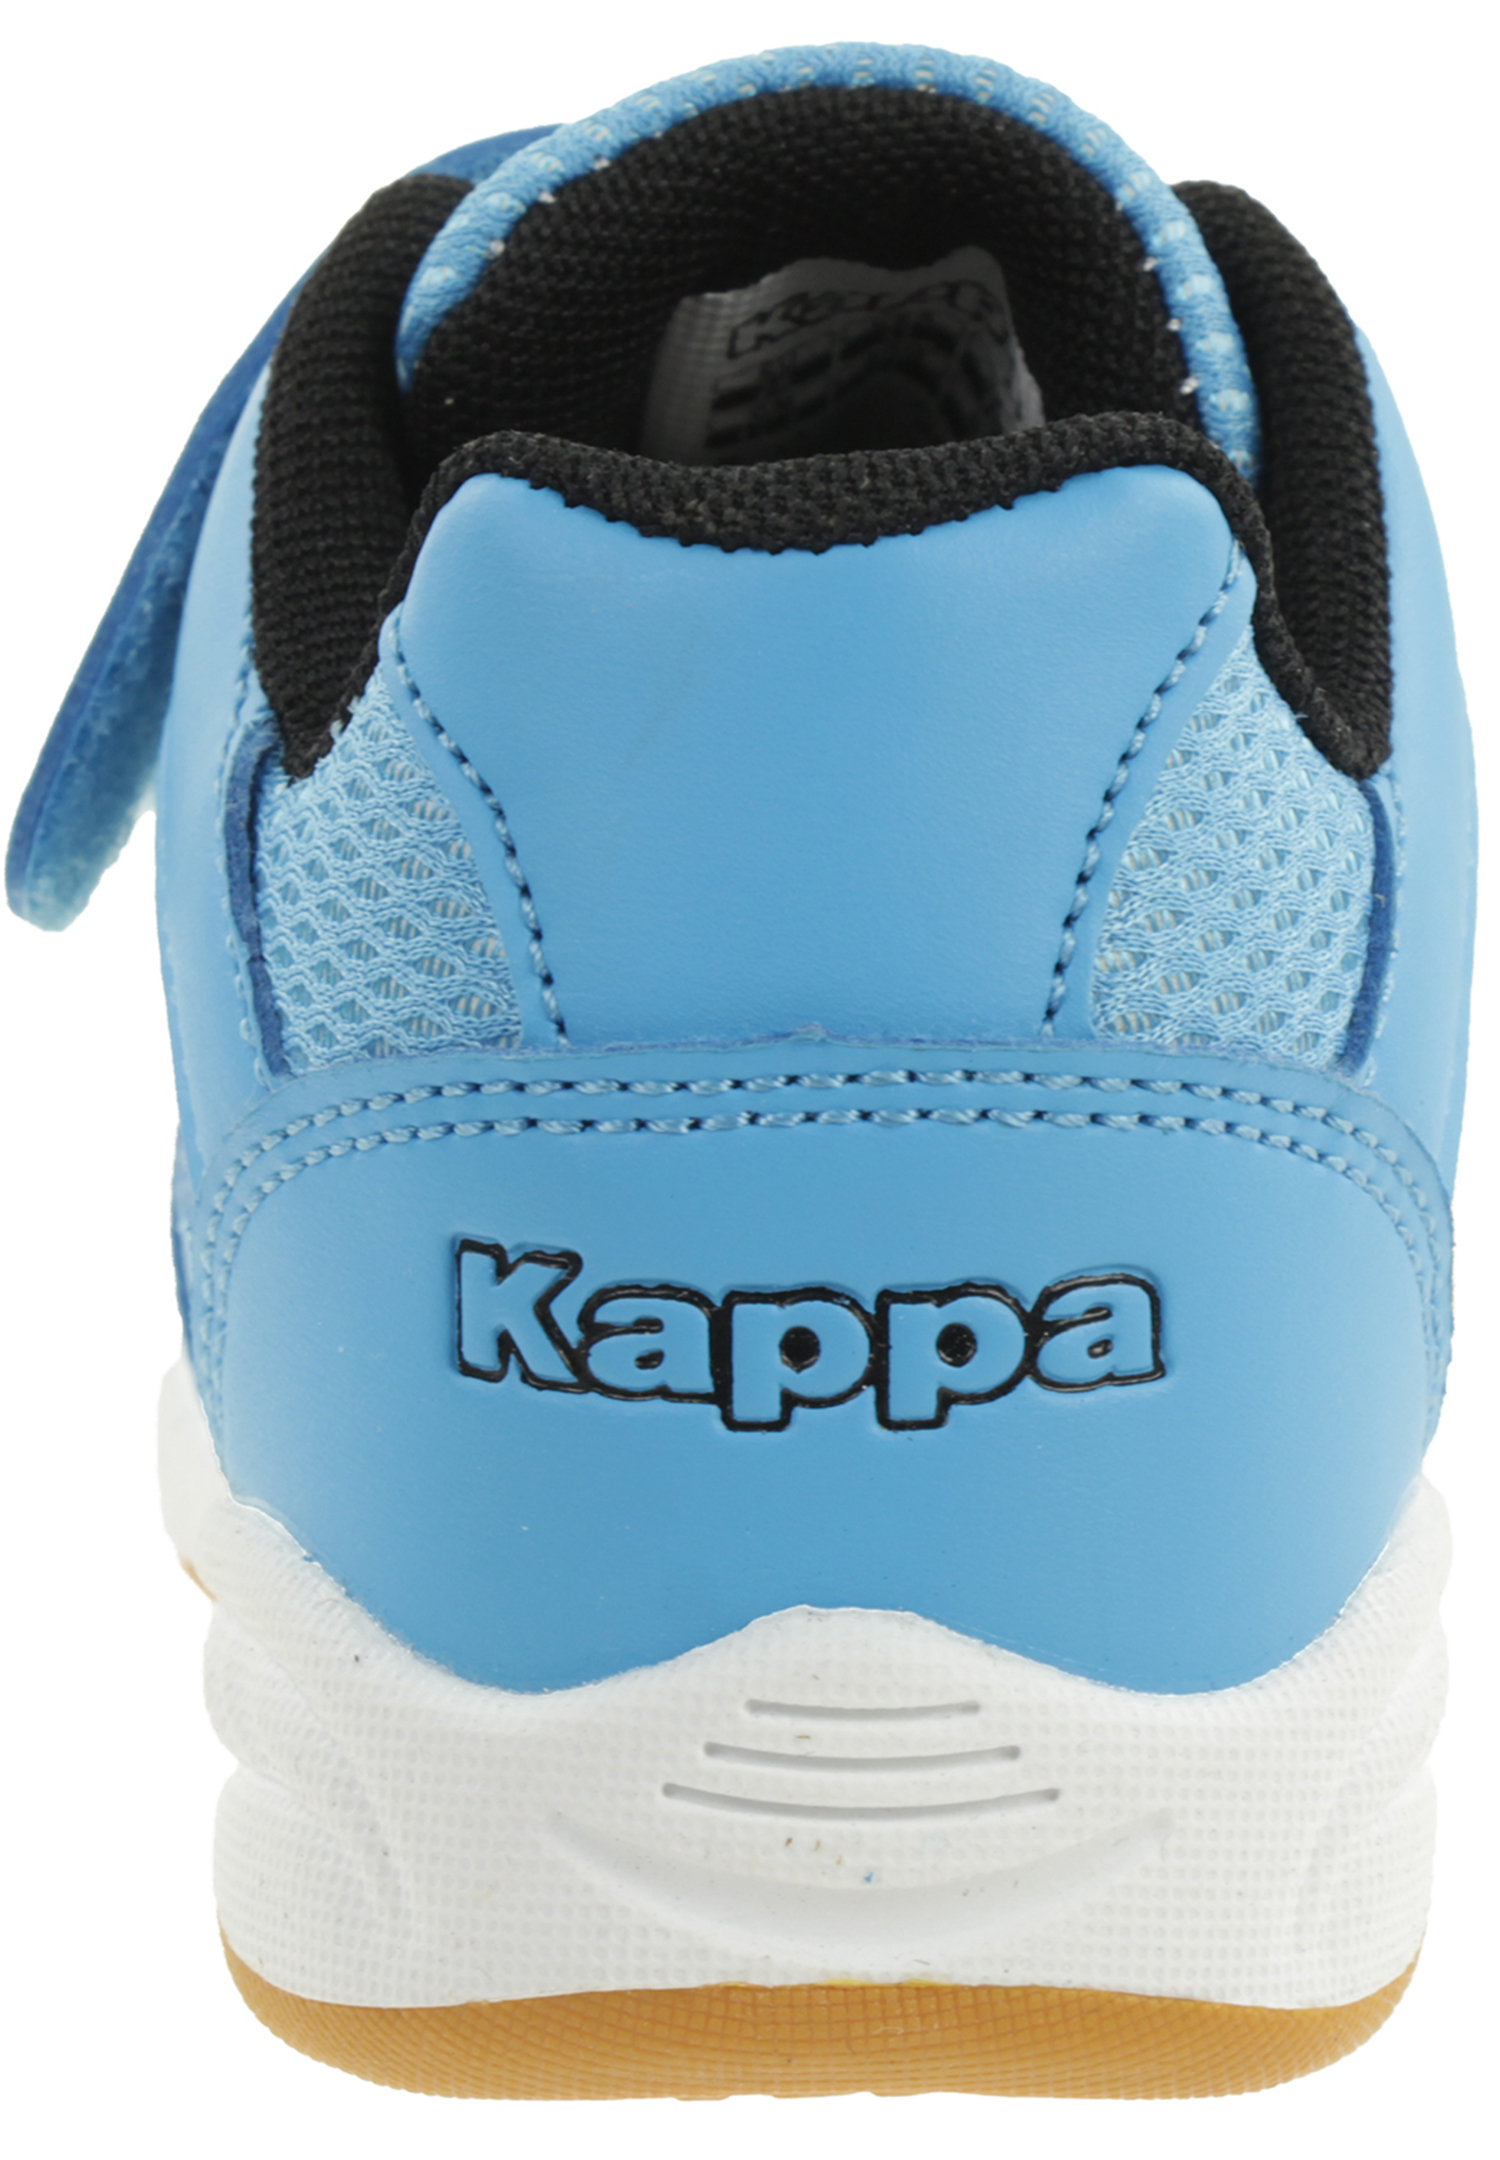 Kappa Indoor Kinder Hallenschuhe blau 260509T